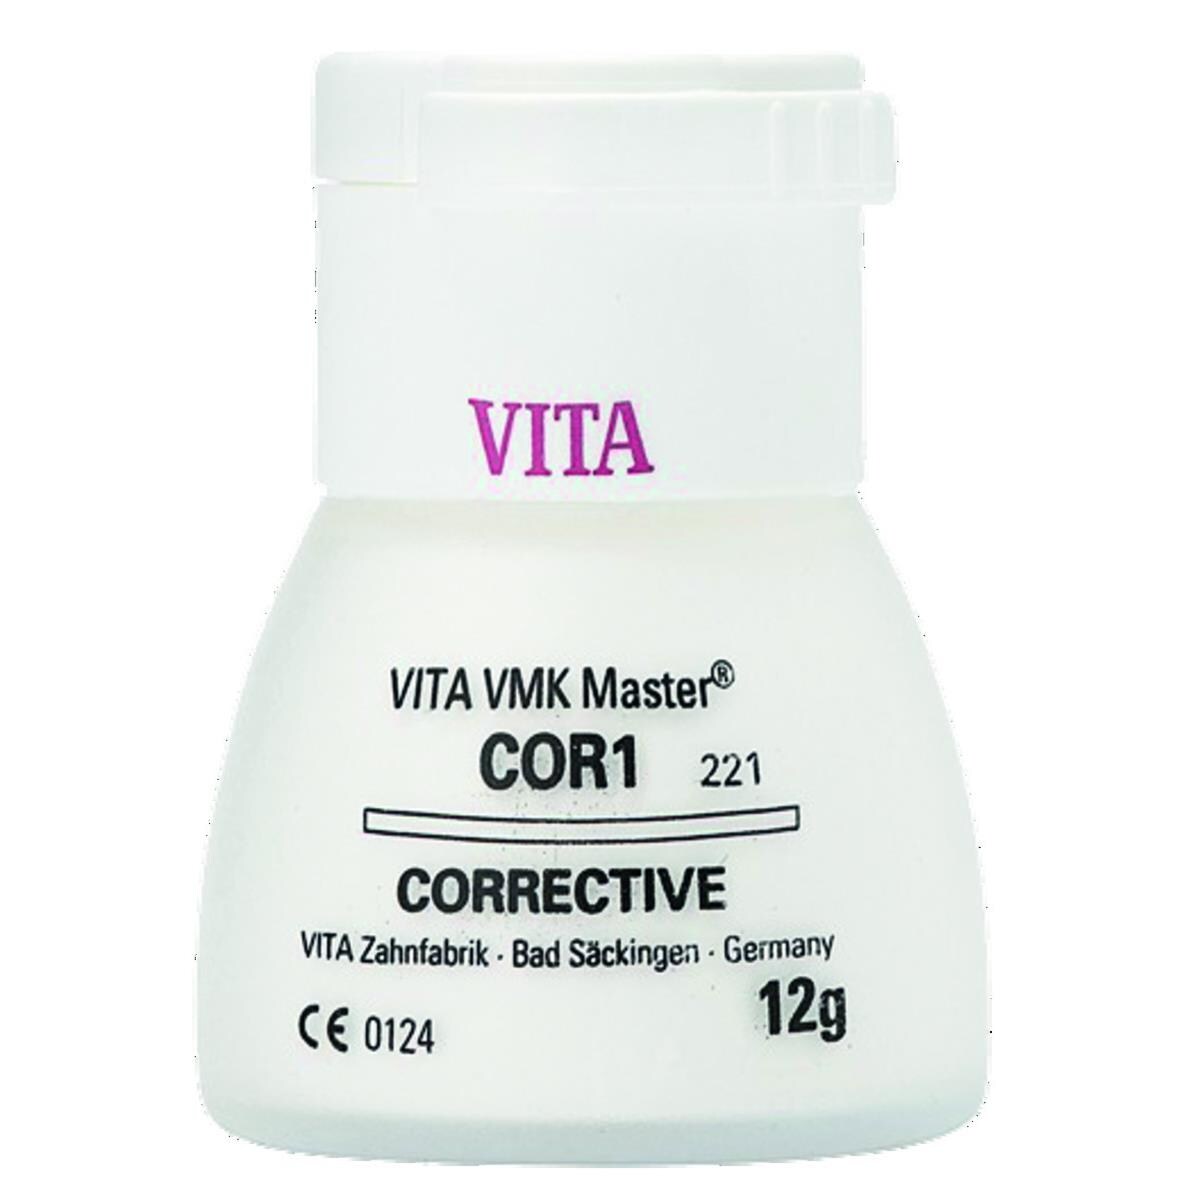 VMK Master VITA - Corrective - COR1 - Le pot de 12 g